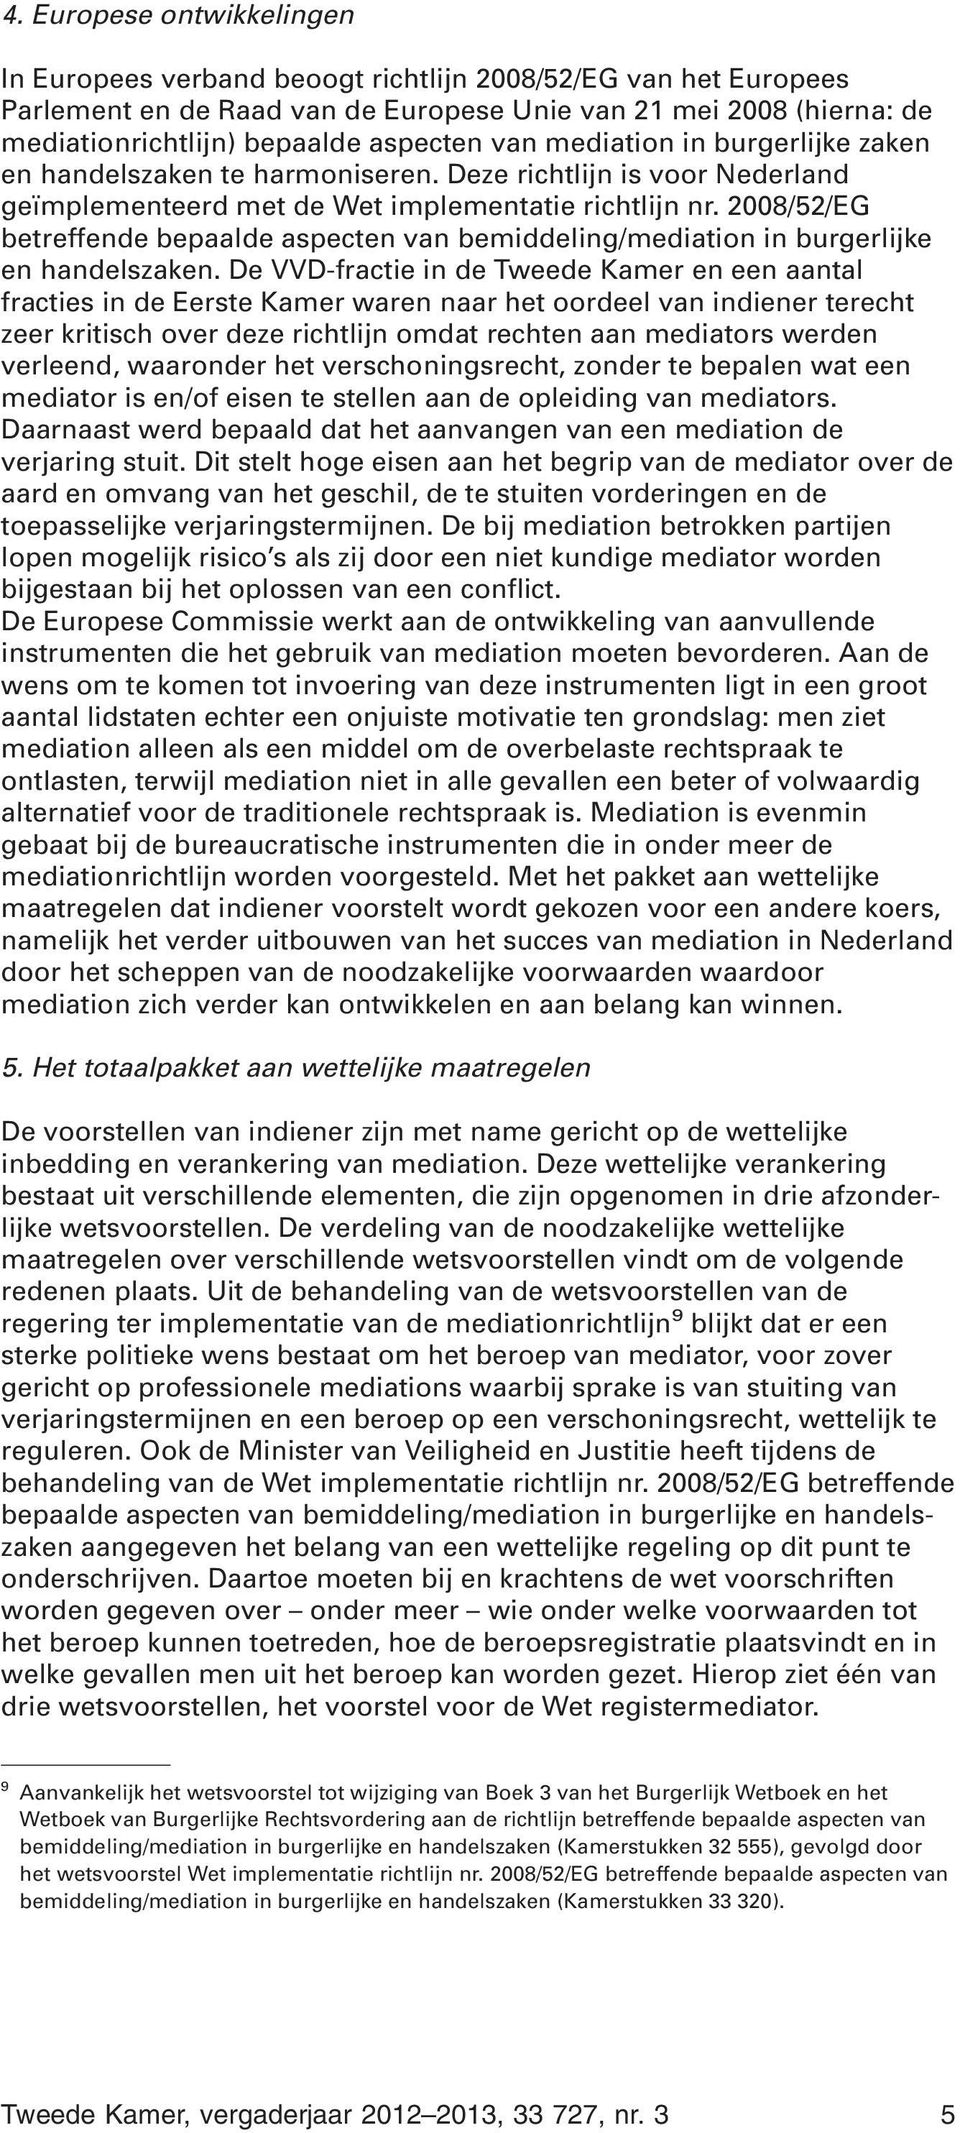 2008/52/EG betreffende bepaalde aspecten van bemiddeling/mediation in burgerlijke en handelszaken.